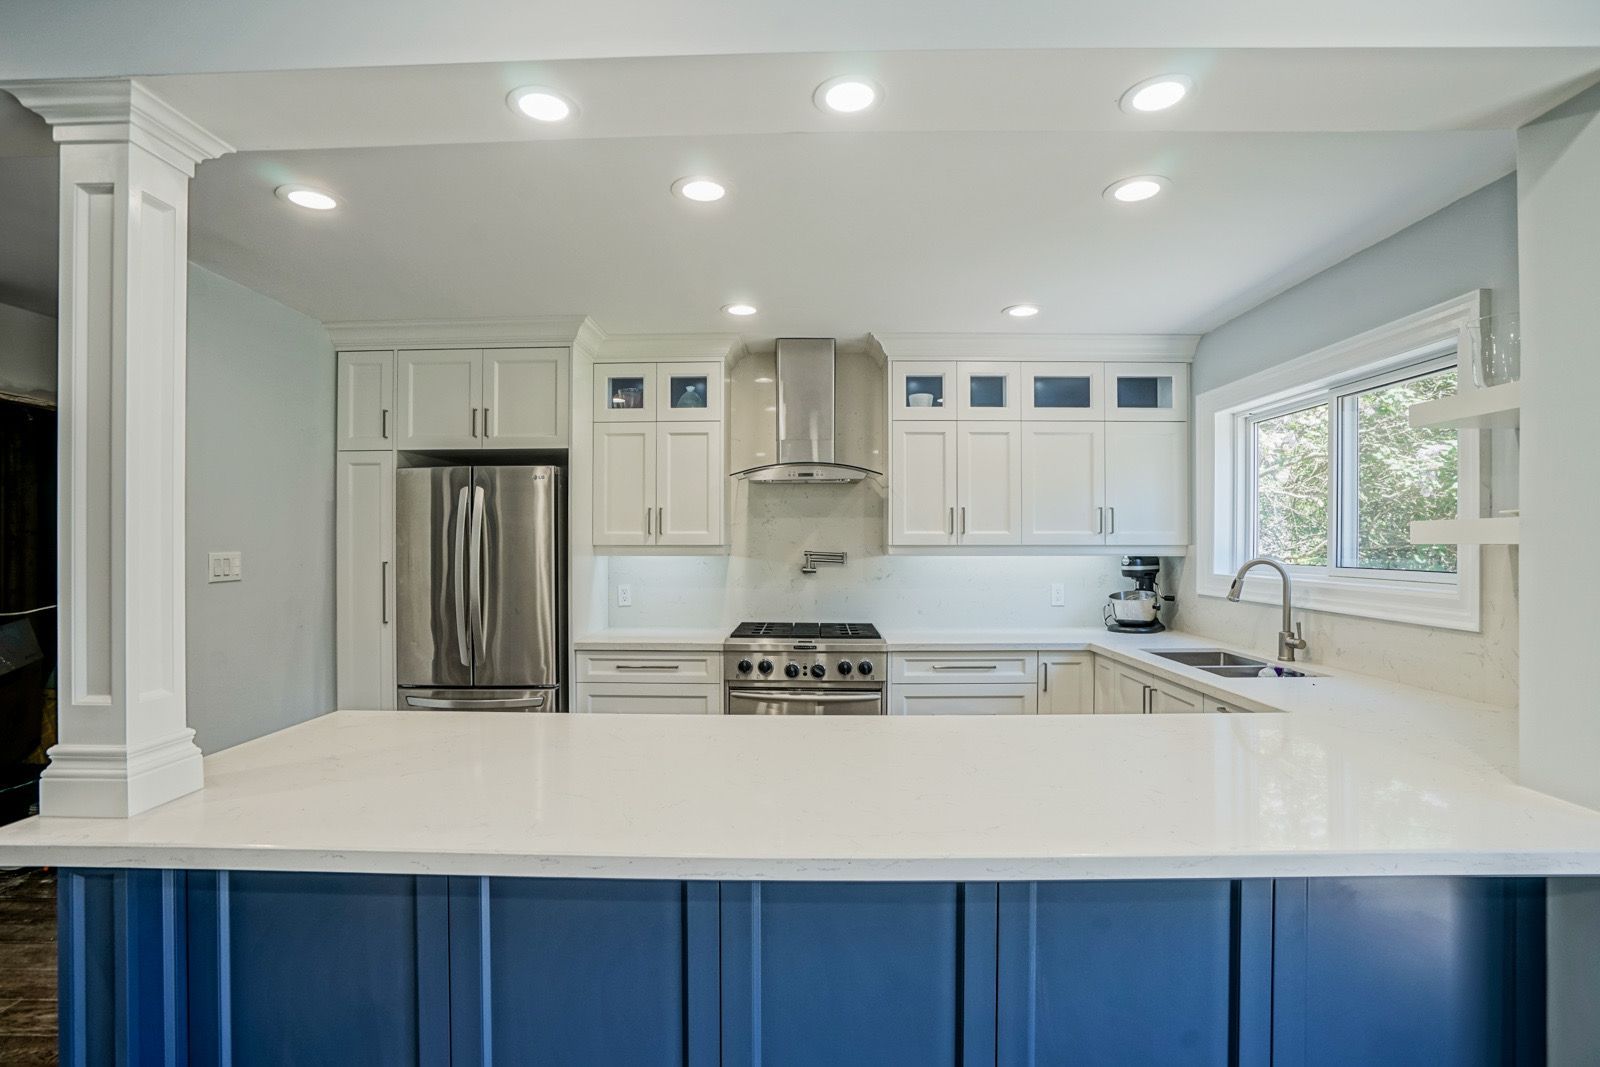 Grande Tile and Reno Plus kitchen cabinet